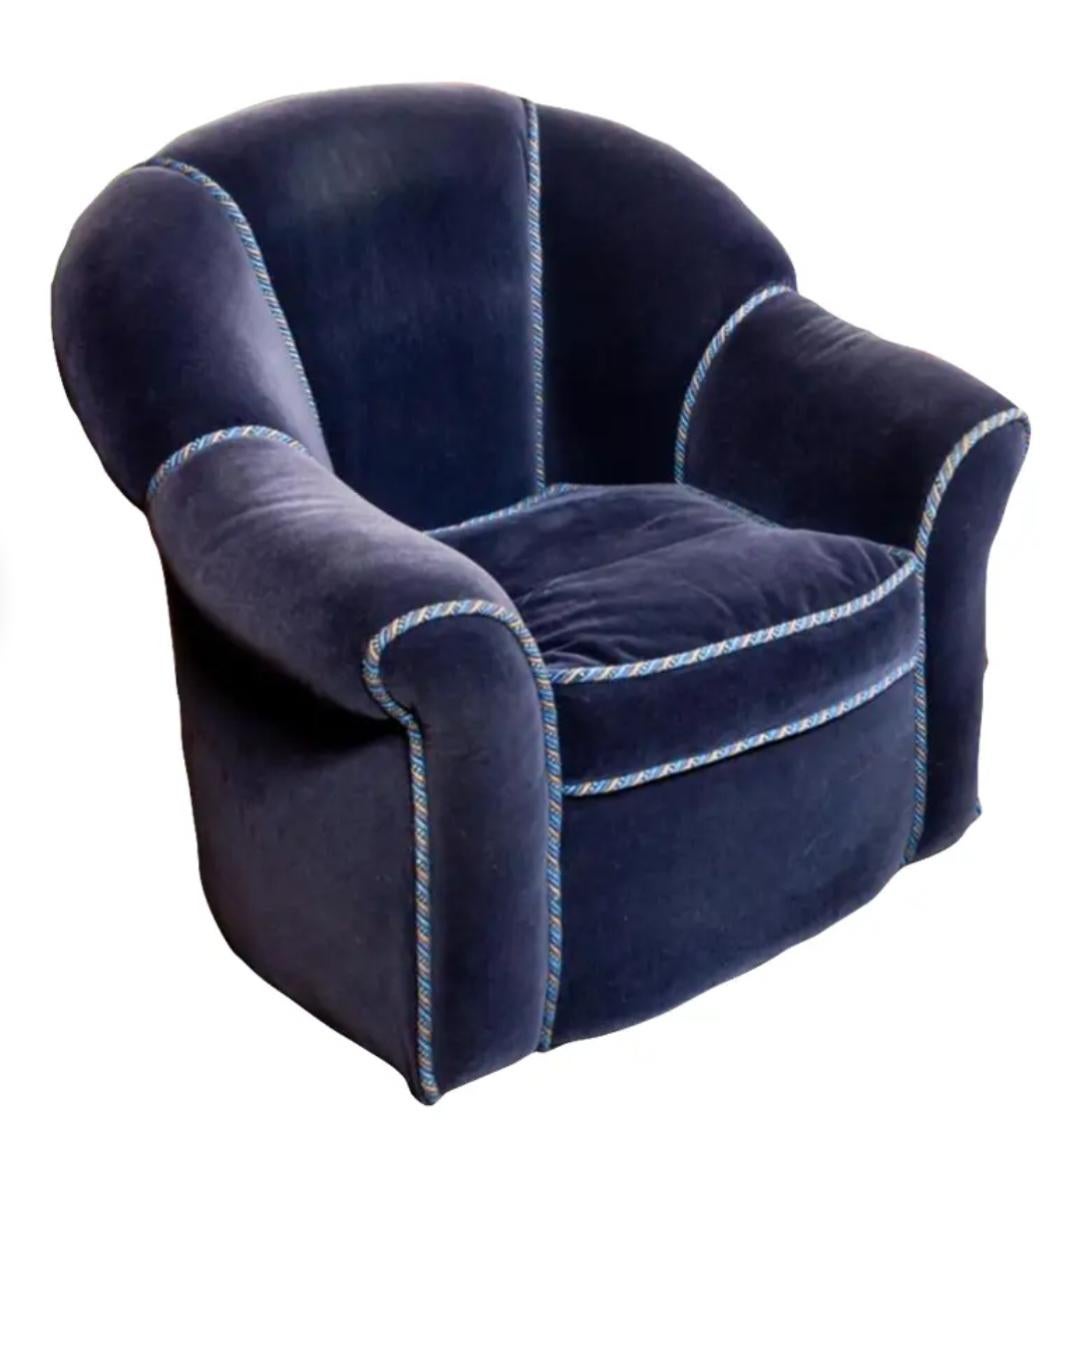 Paar Art Deco Style Upholstering Sapphire Blue Velvet Club Chairs (20. Jahrhundert)